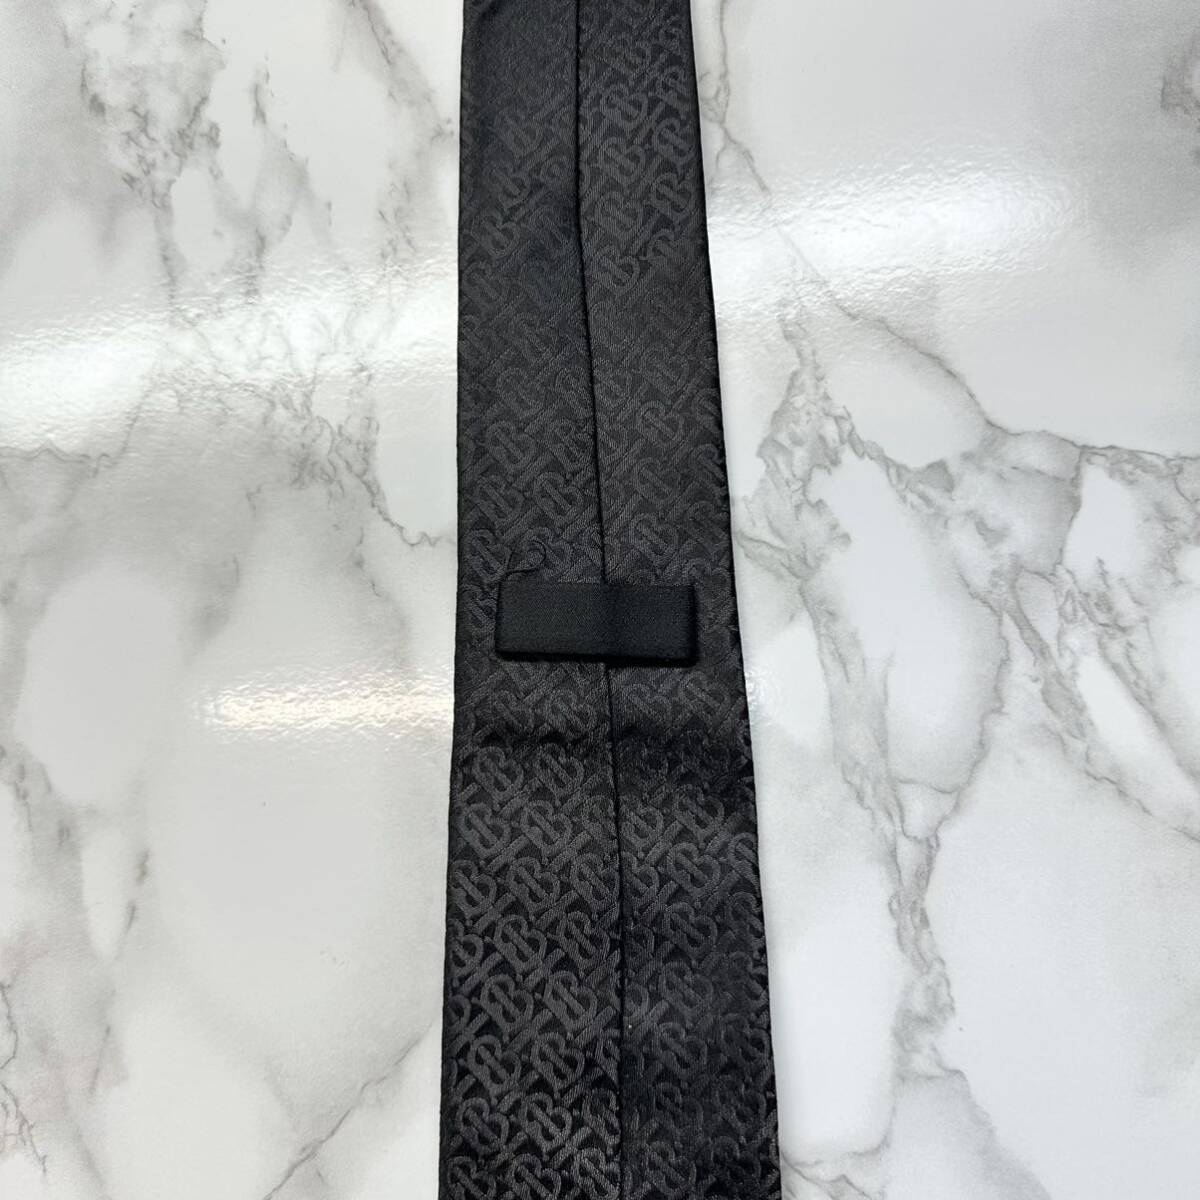  превосходный товар действующий бирка редкость BURBERRY галстук шелк 100% TB рисунок глянец узкий галстук бренд Logo вышивка черный бесплатная доставка 